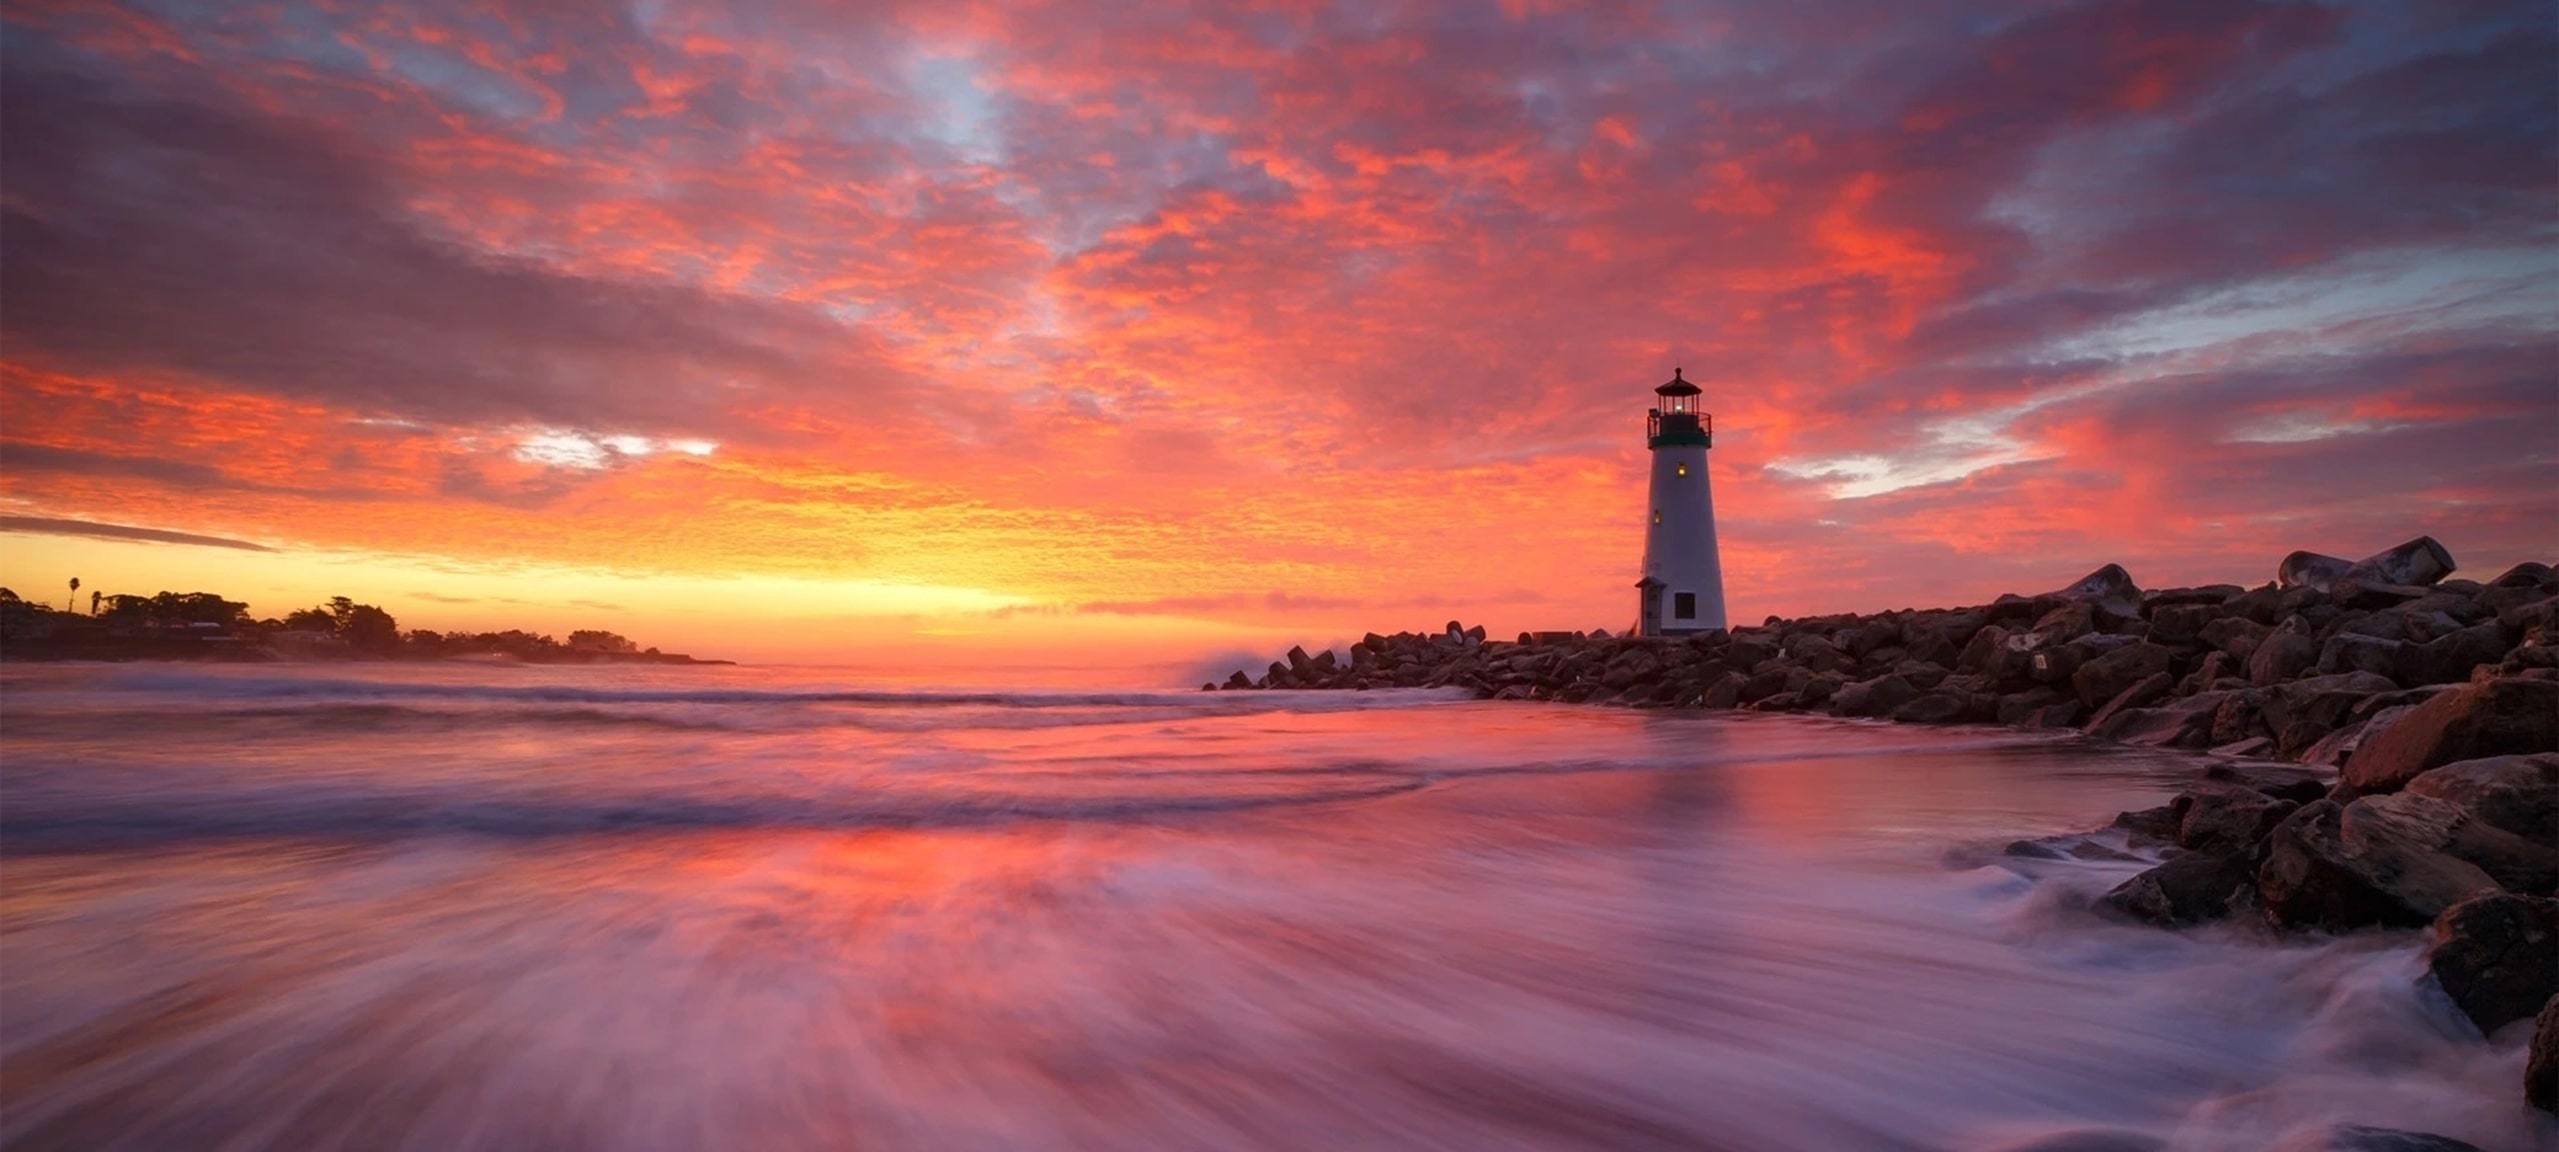 Pink and orange sunset at Walton Lighthouse in Santa Cruz, CA